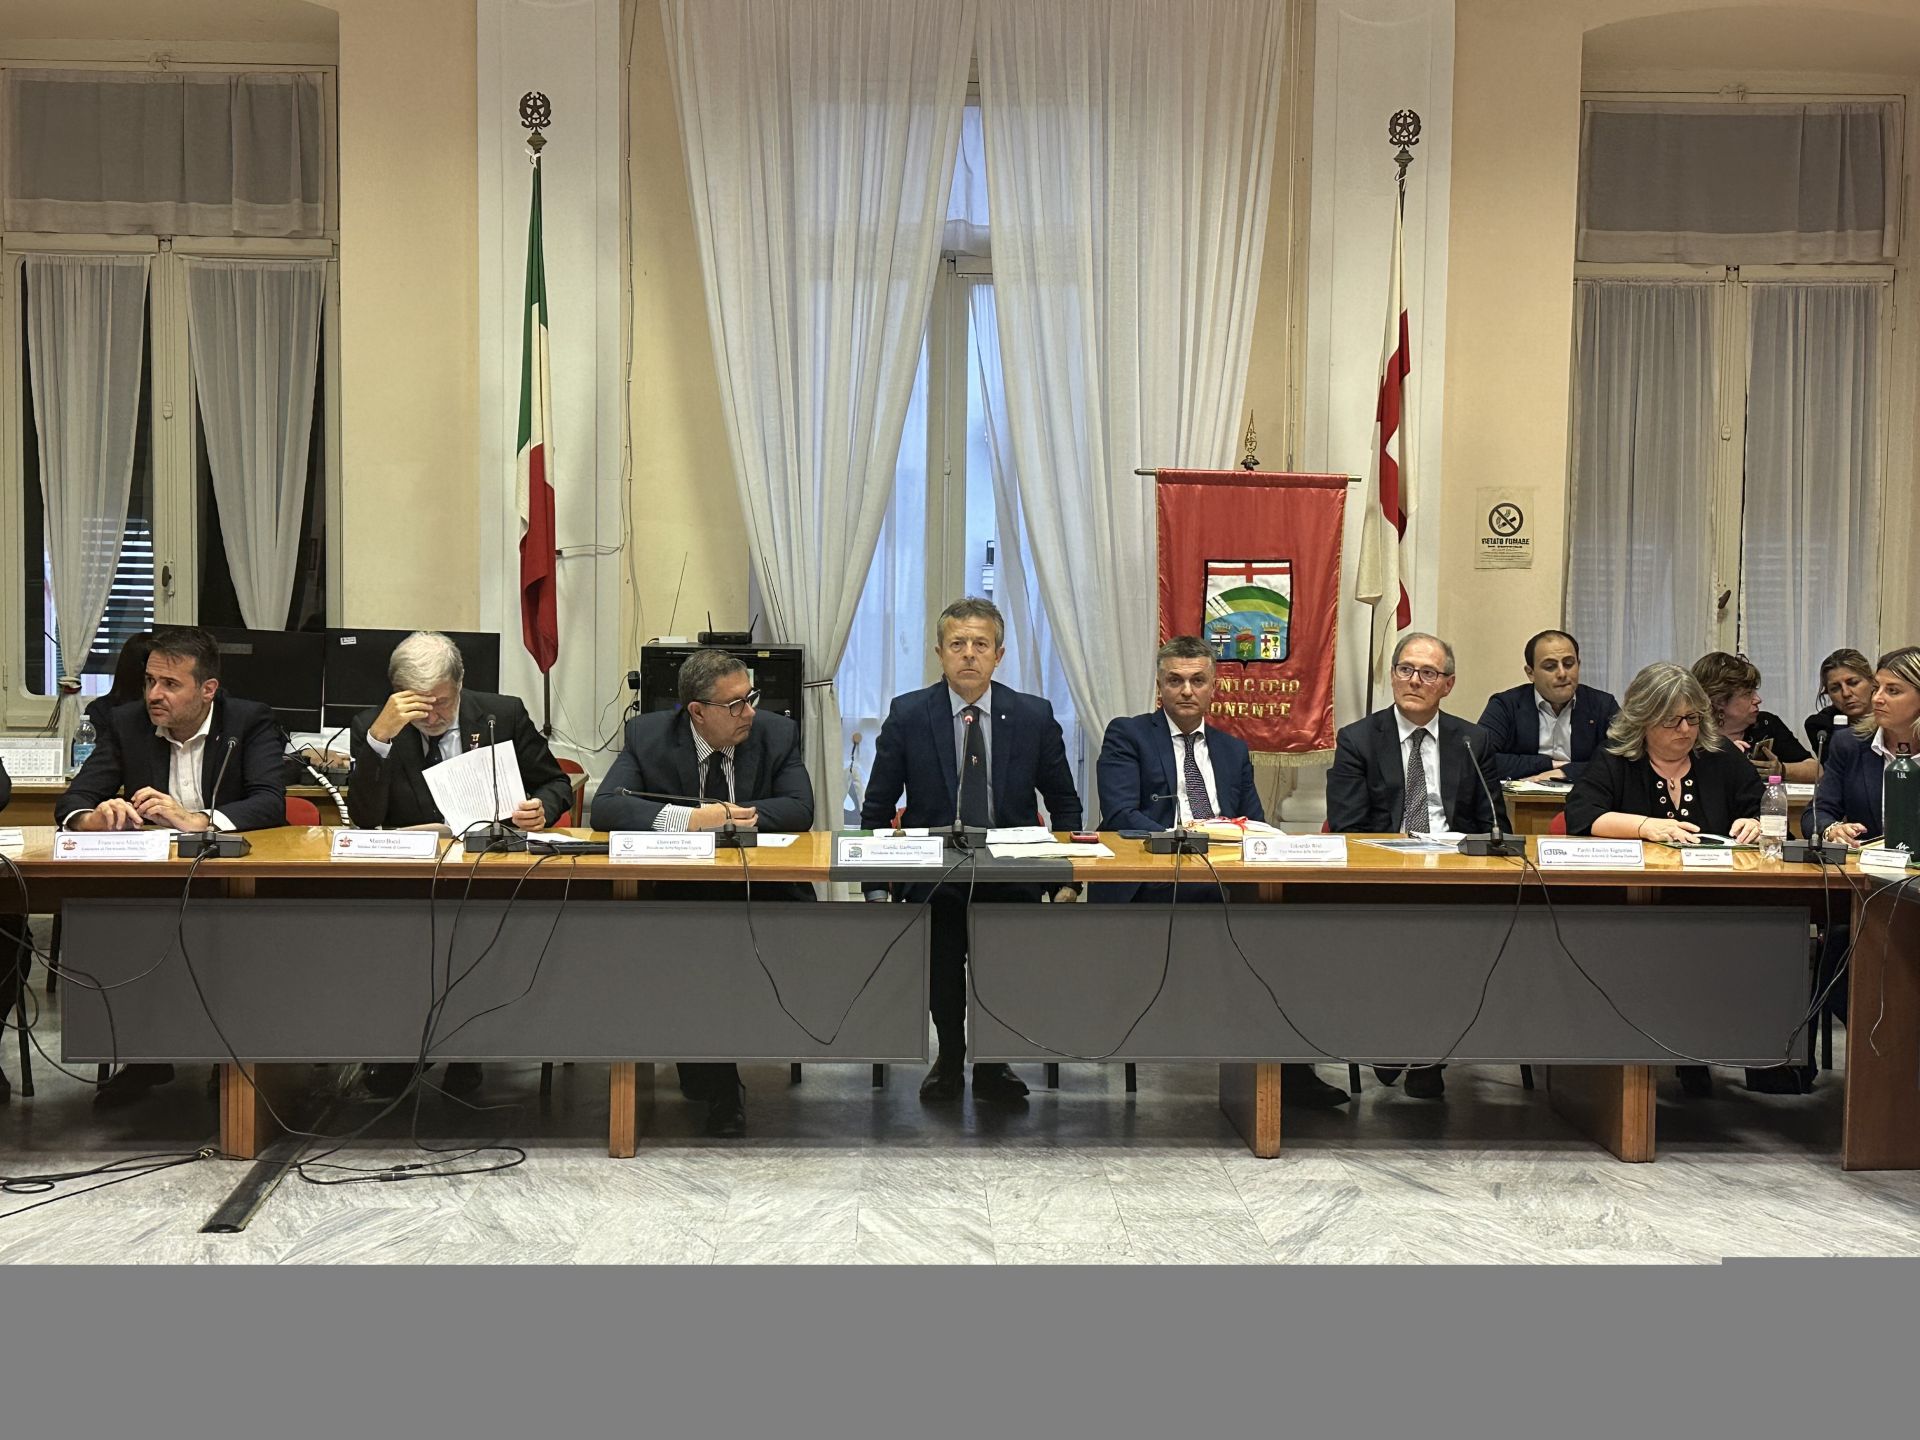 Cassoni della Diga a Prà, il vice ministro Rixi: "Mi impegnerò affinchè vengano costruiti tra Vado e Piombino"